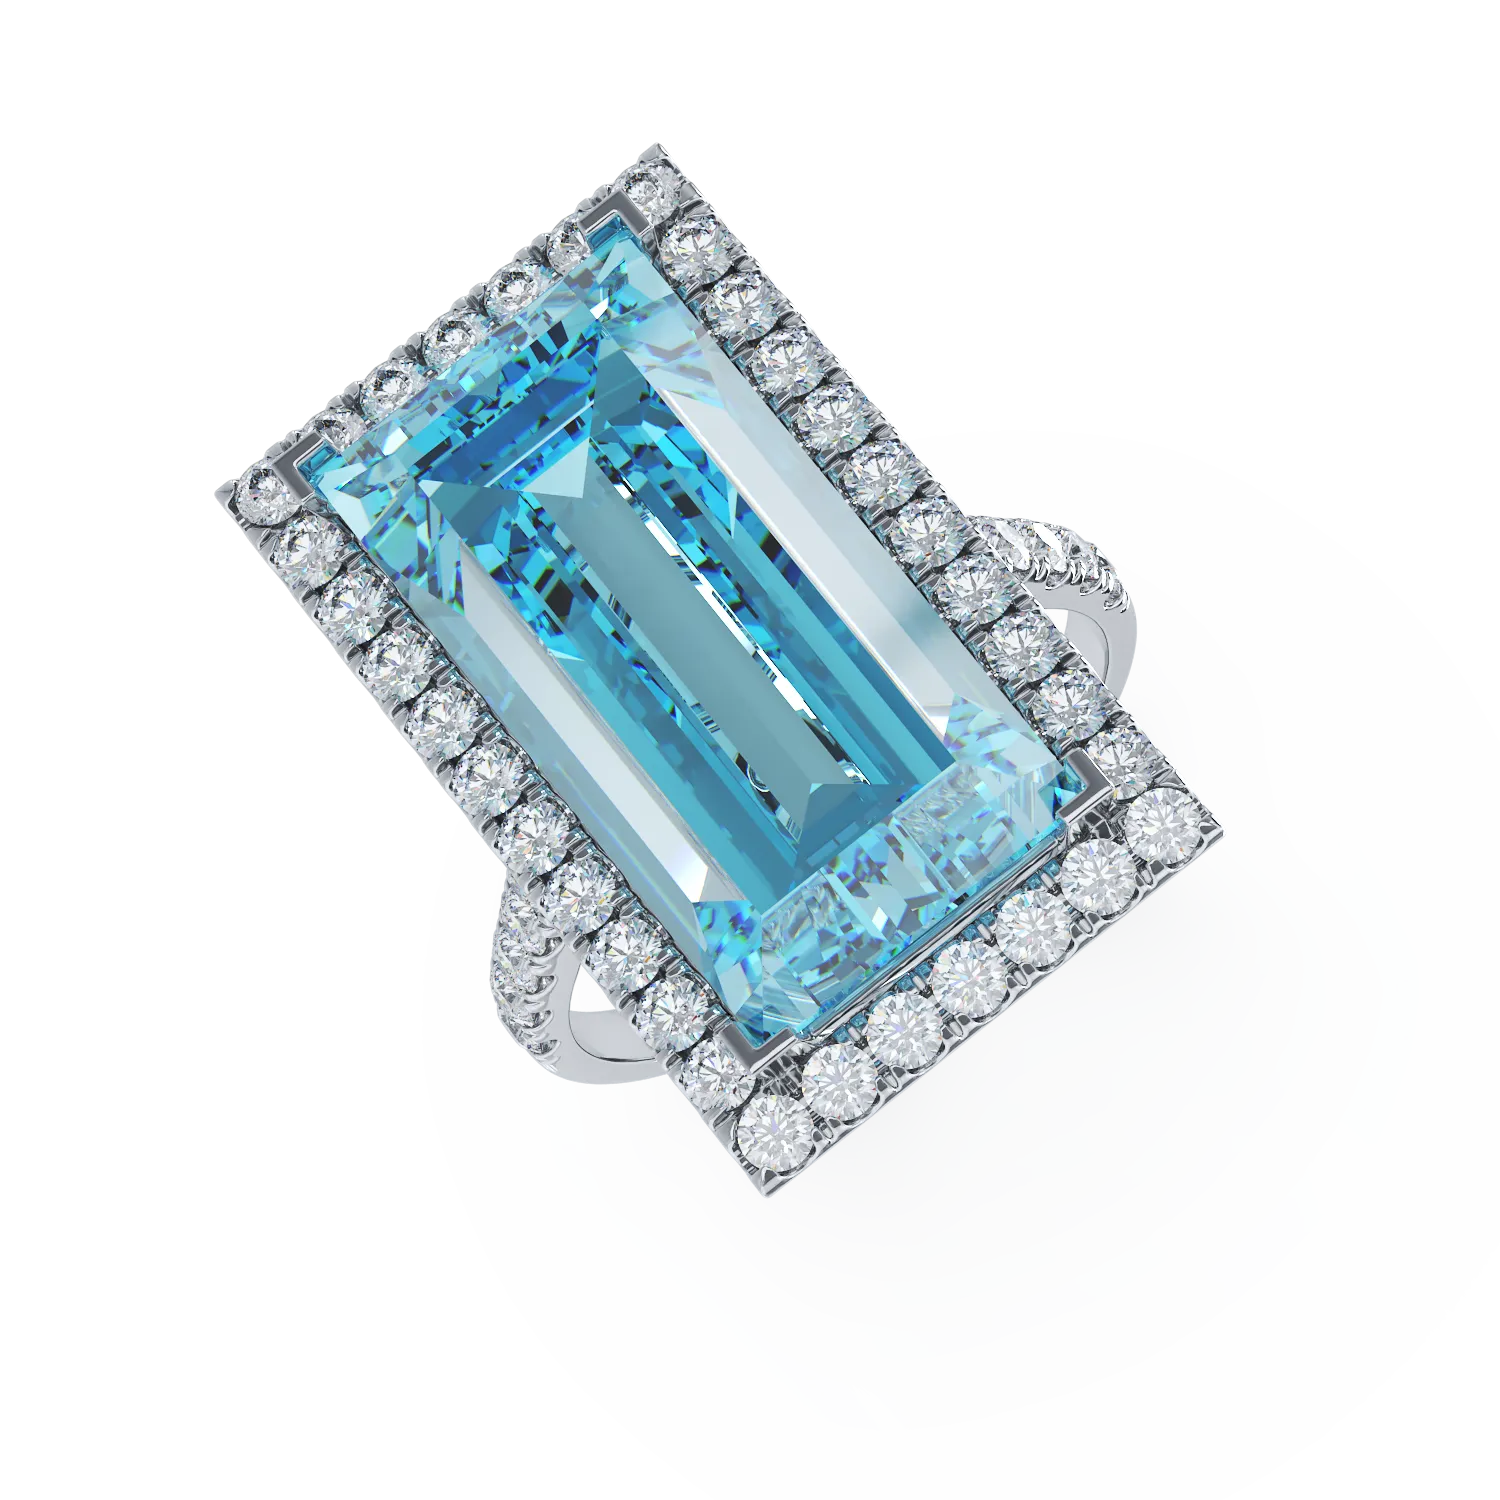 Fehérarany gyűrű 17.31ct kék topázzal és 1.35ct gyémántokkal